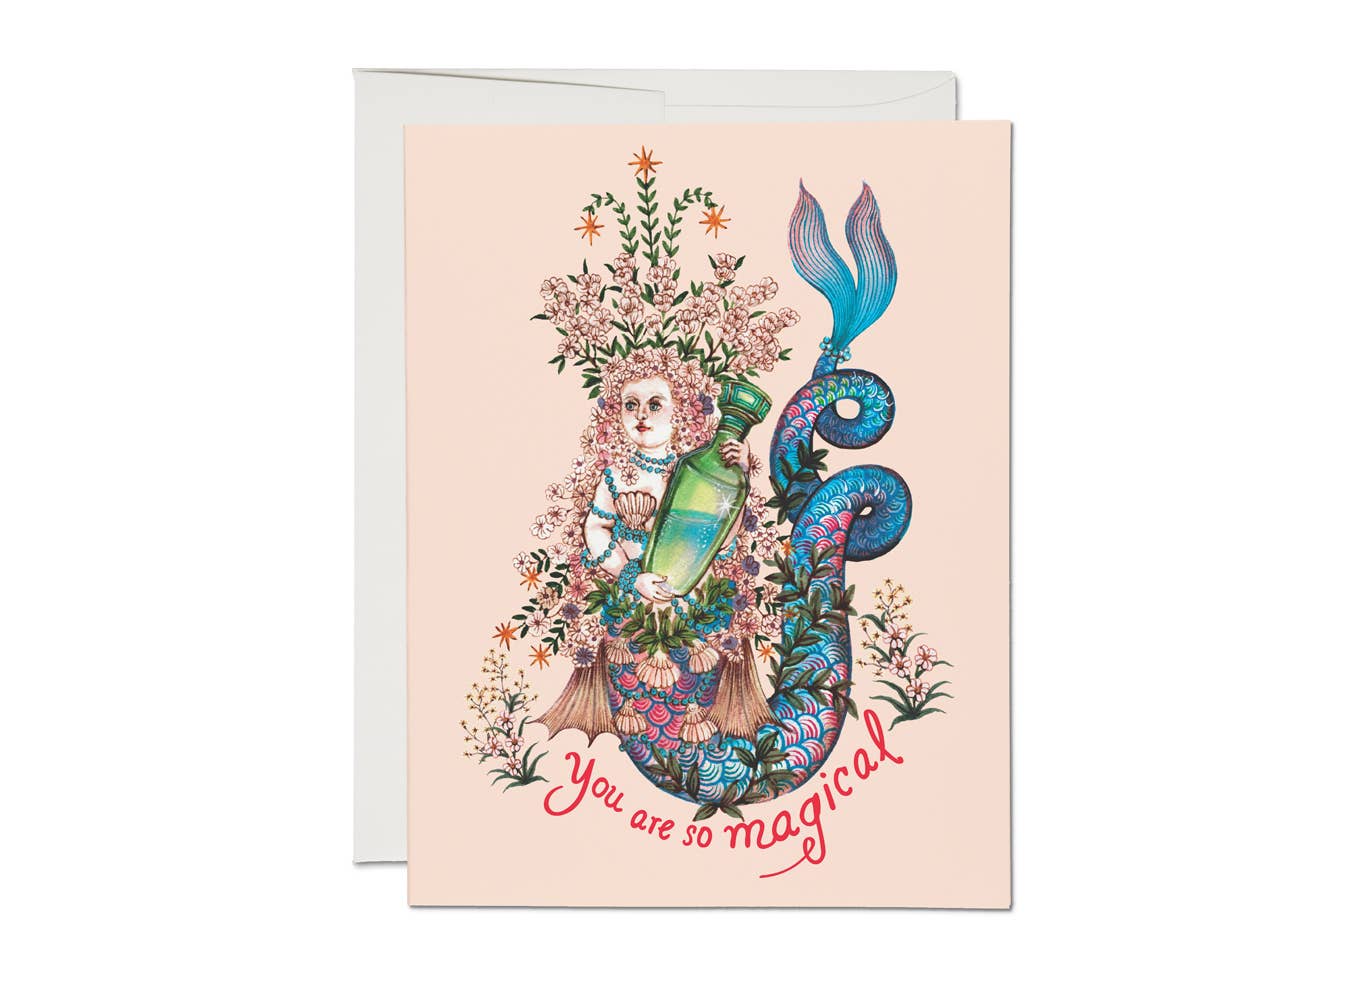 Magical Mermaid friendship greeting card